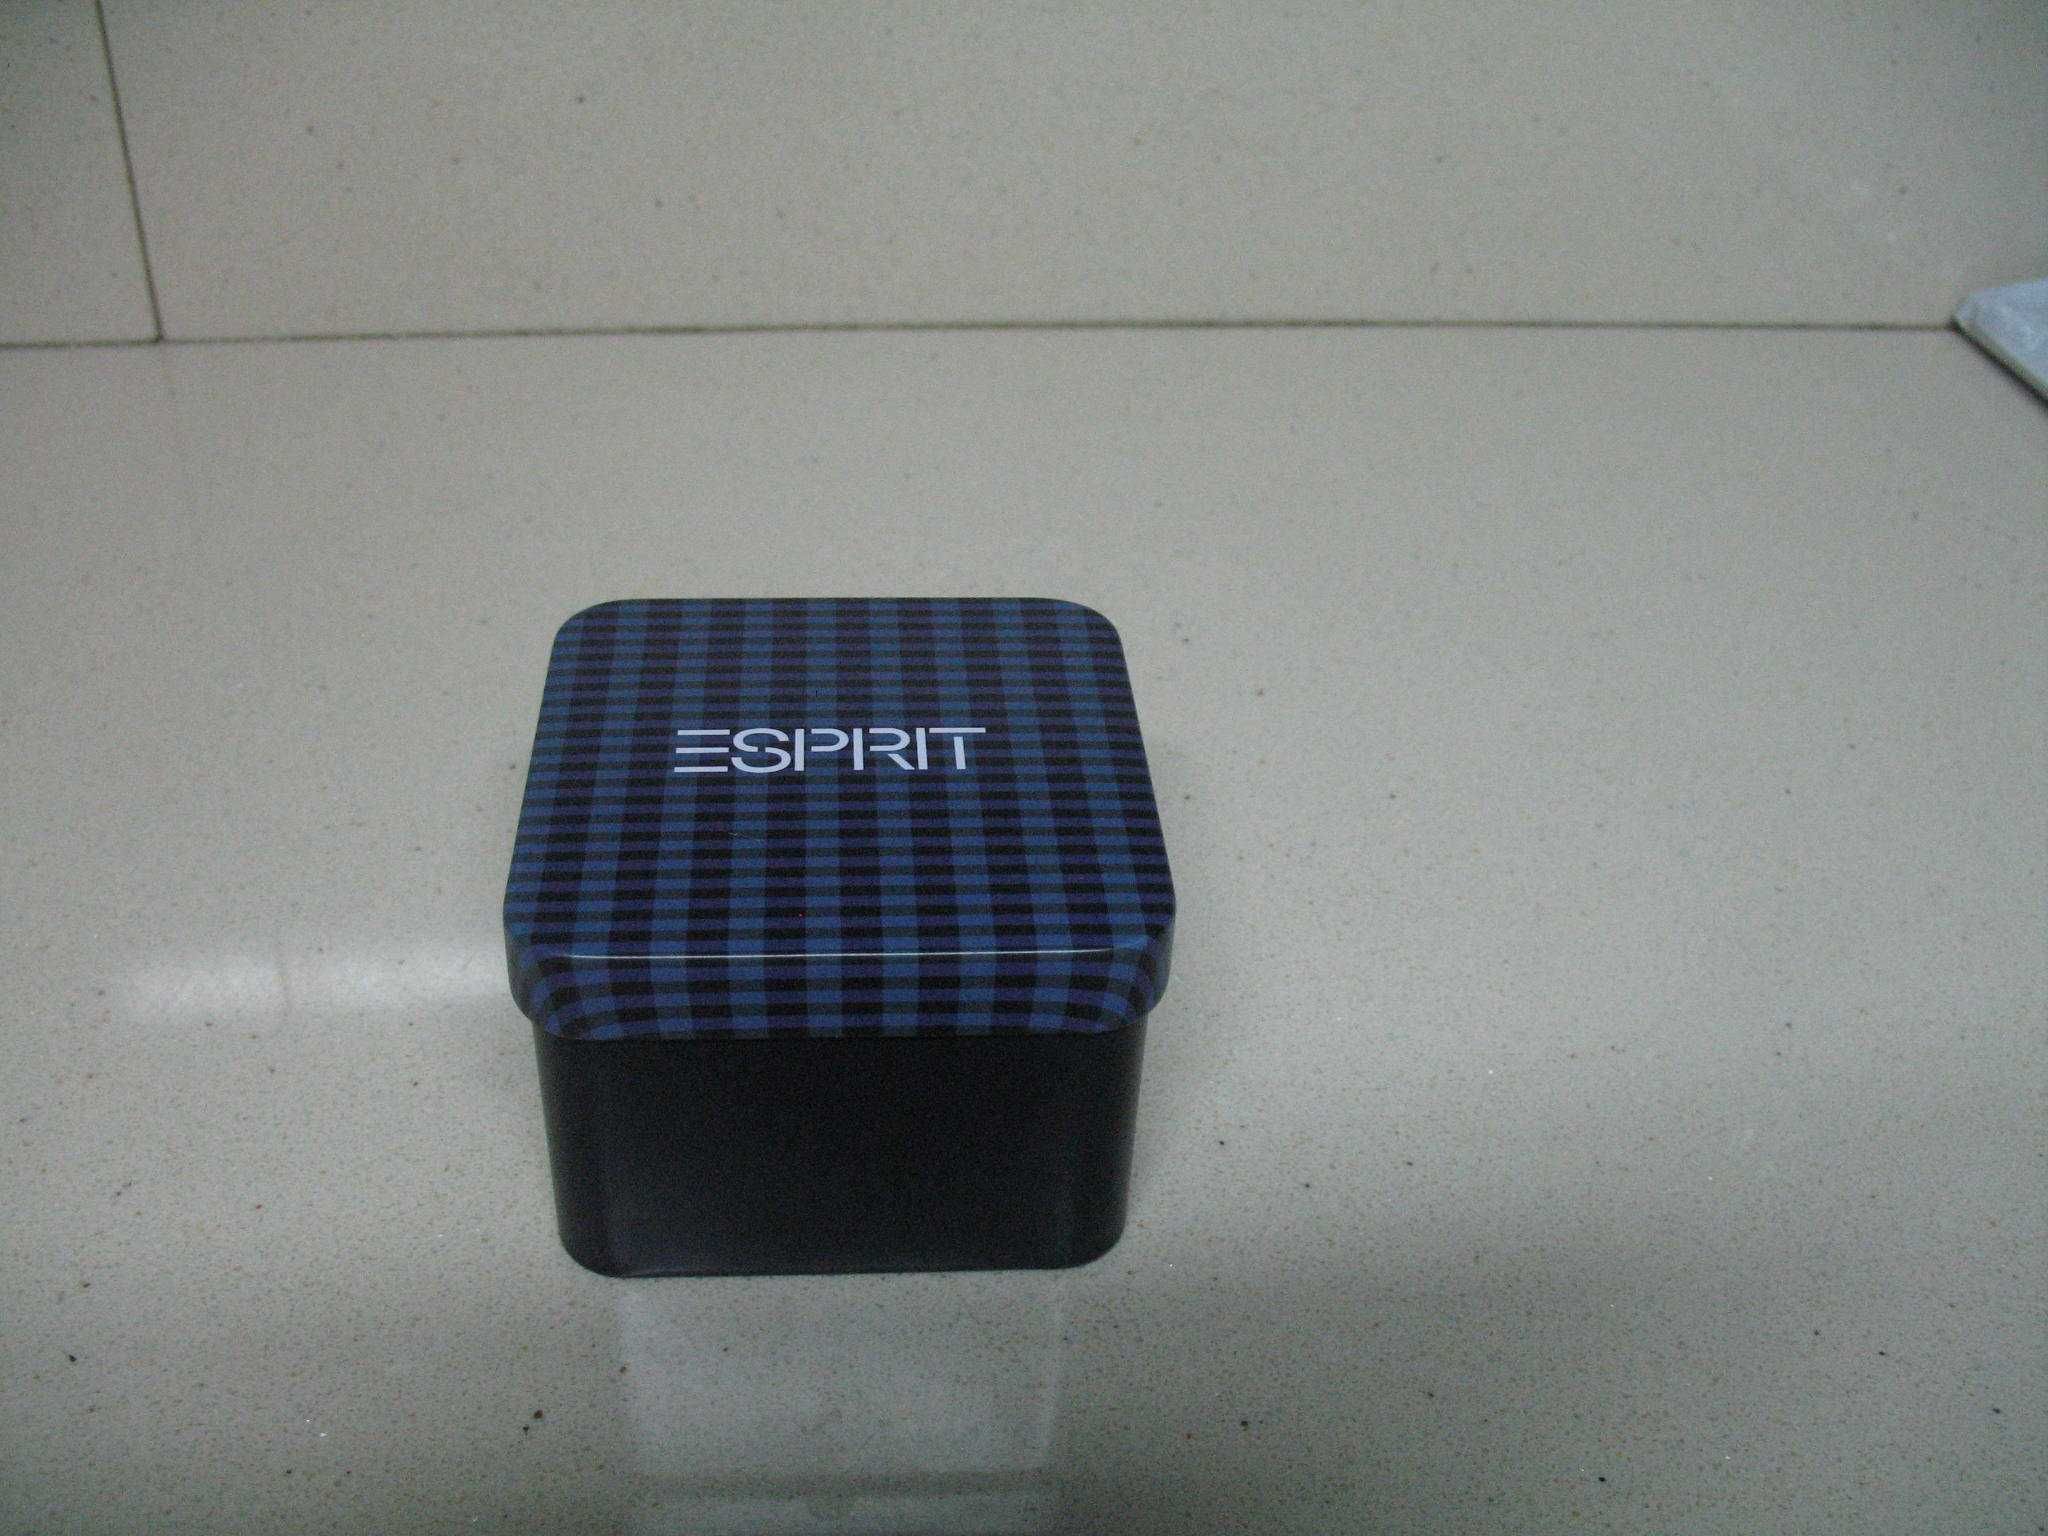 Caixa nova de marca Esprit